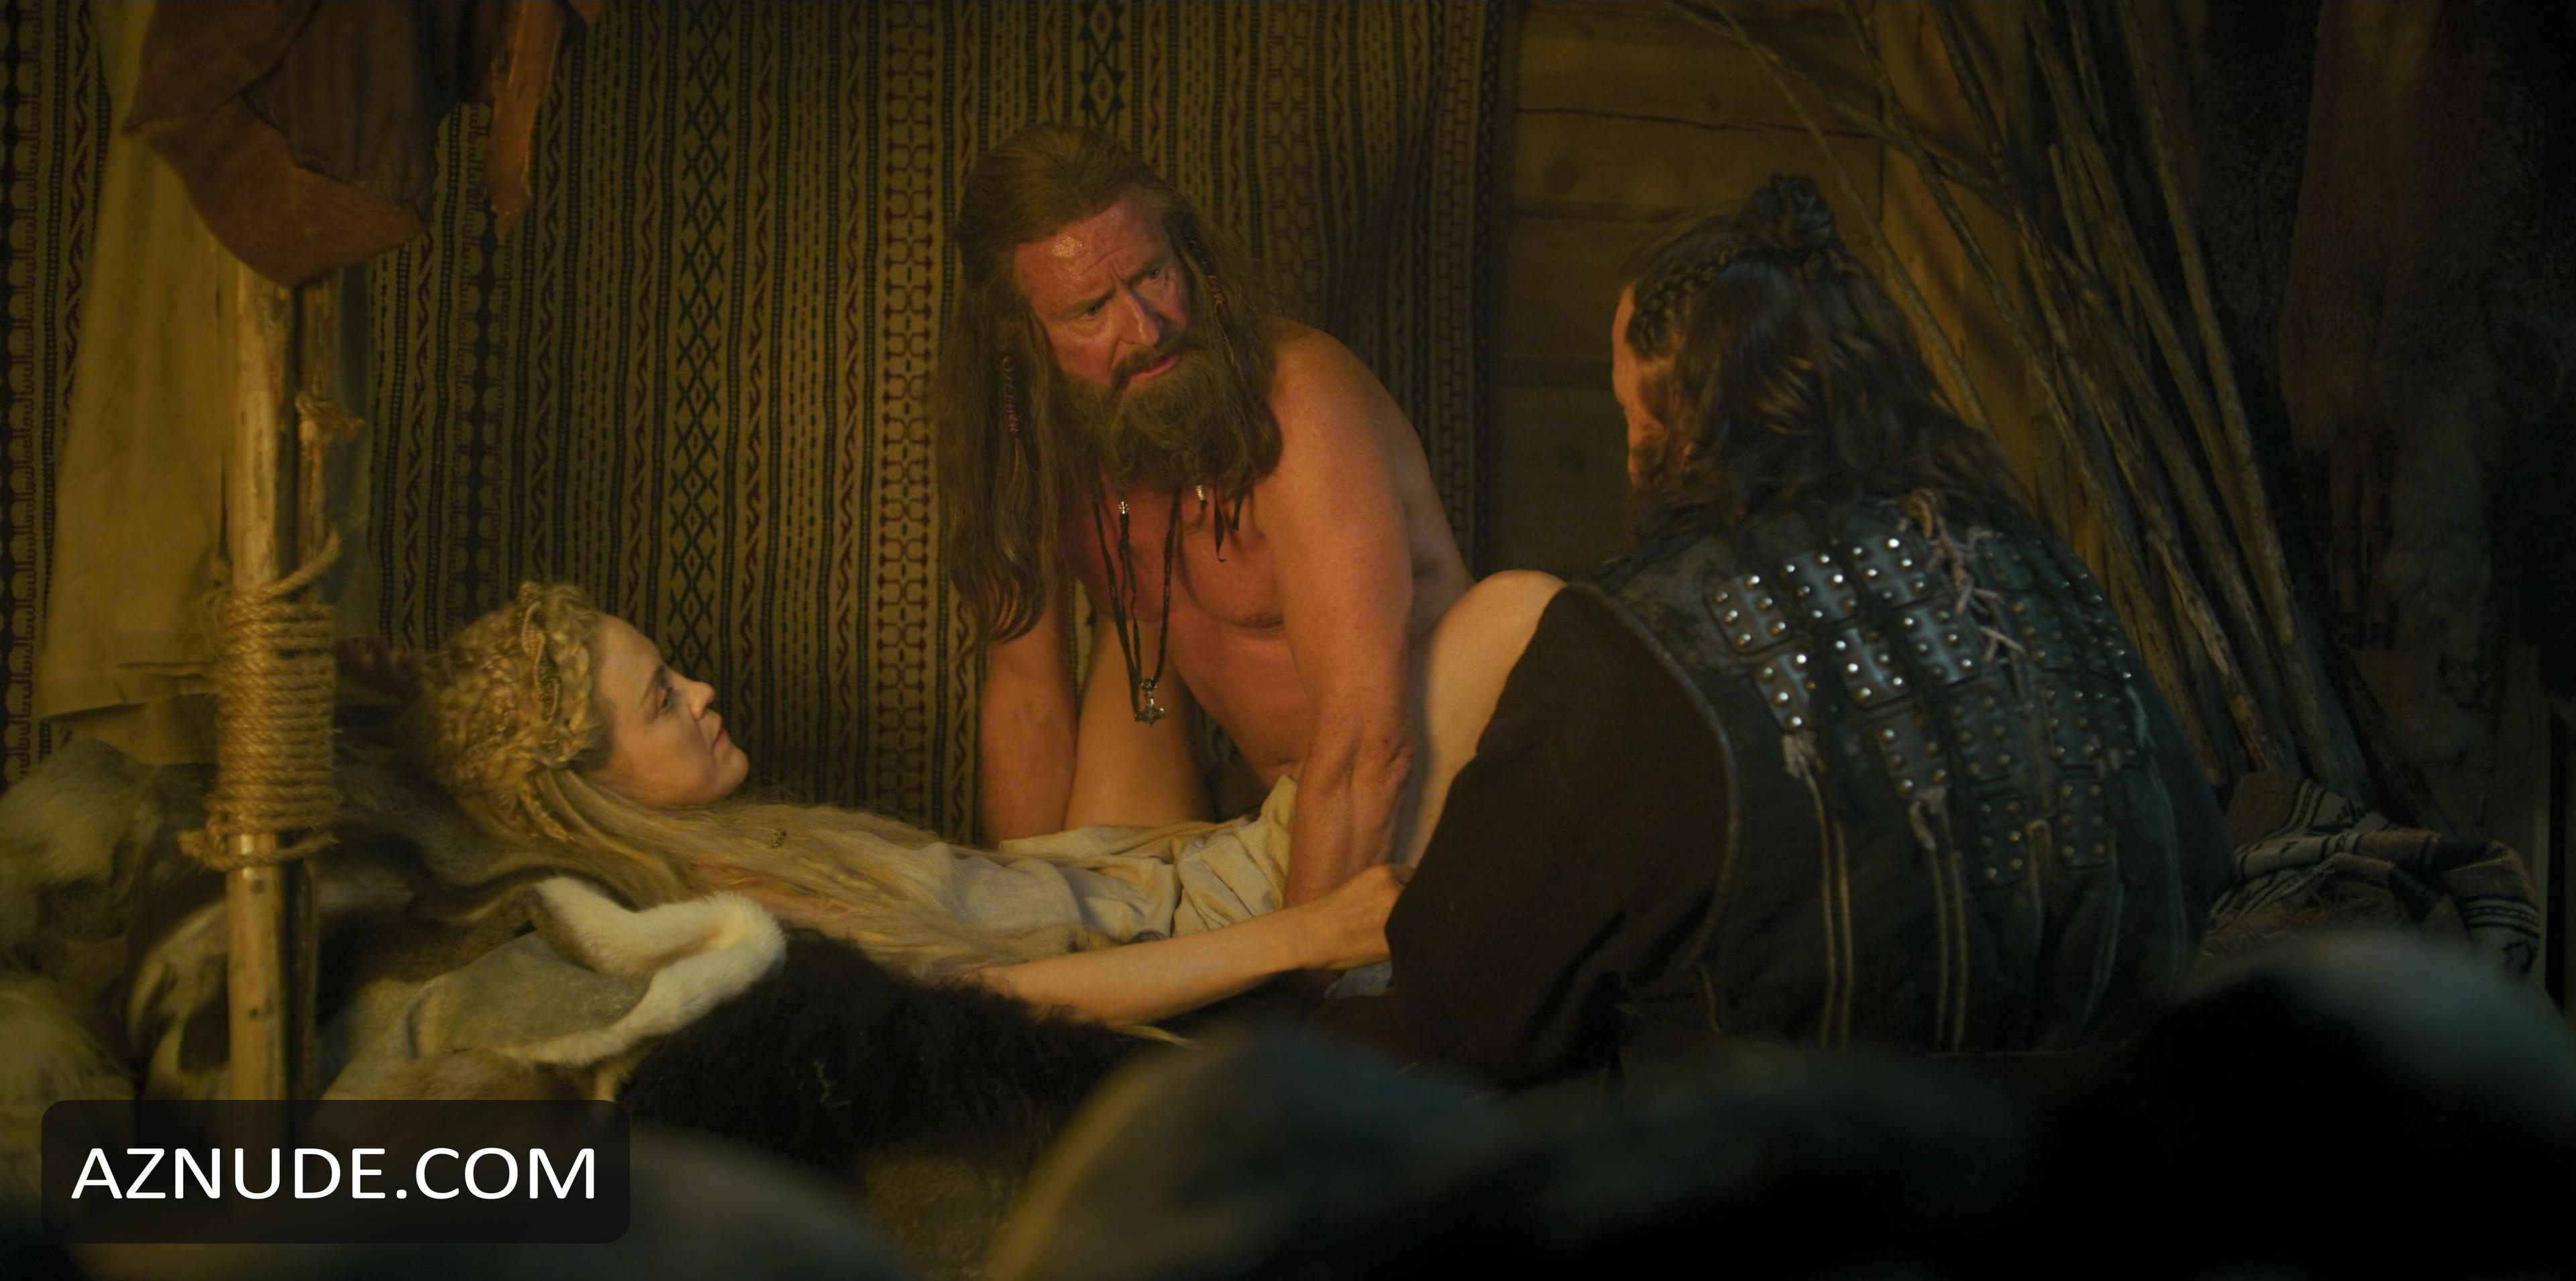 Norsemen sex scenes video